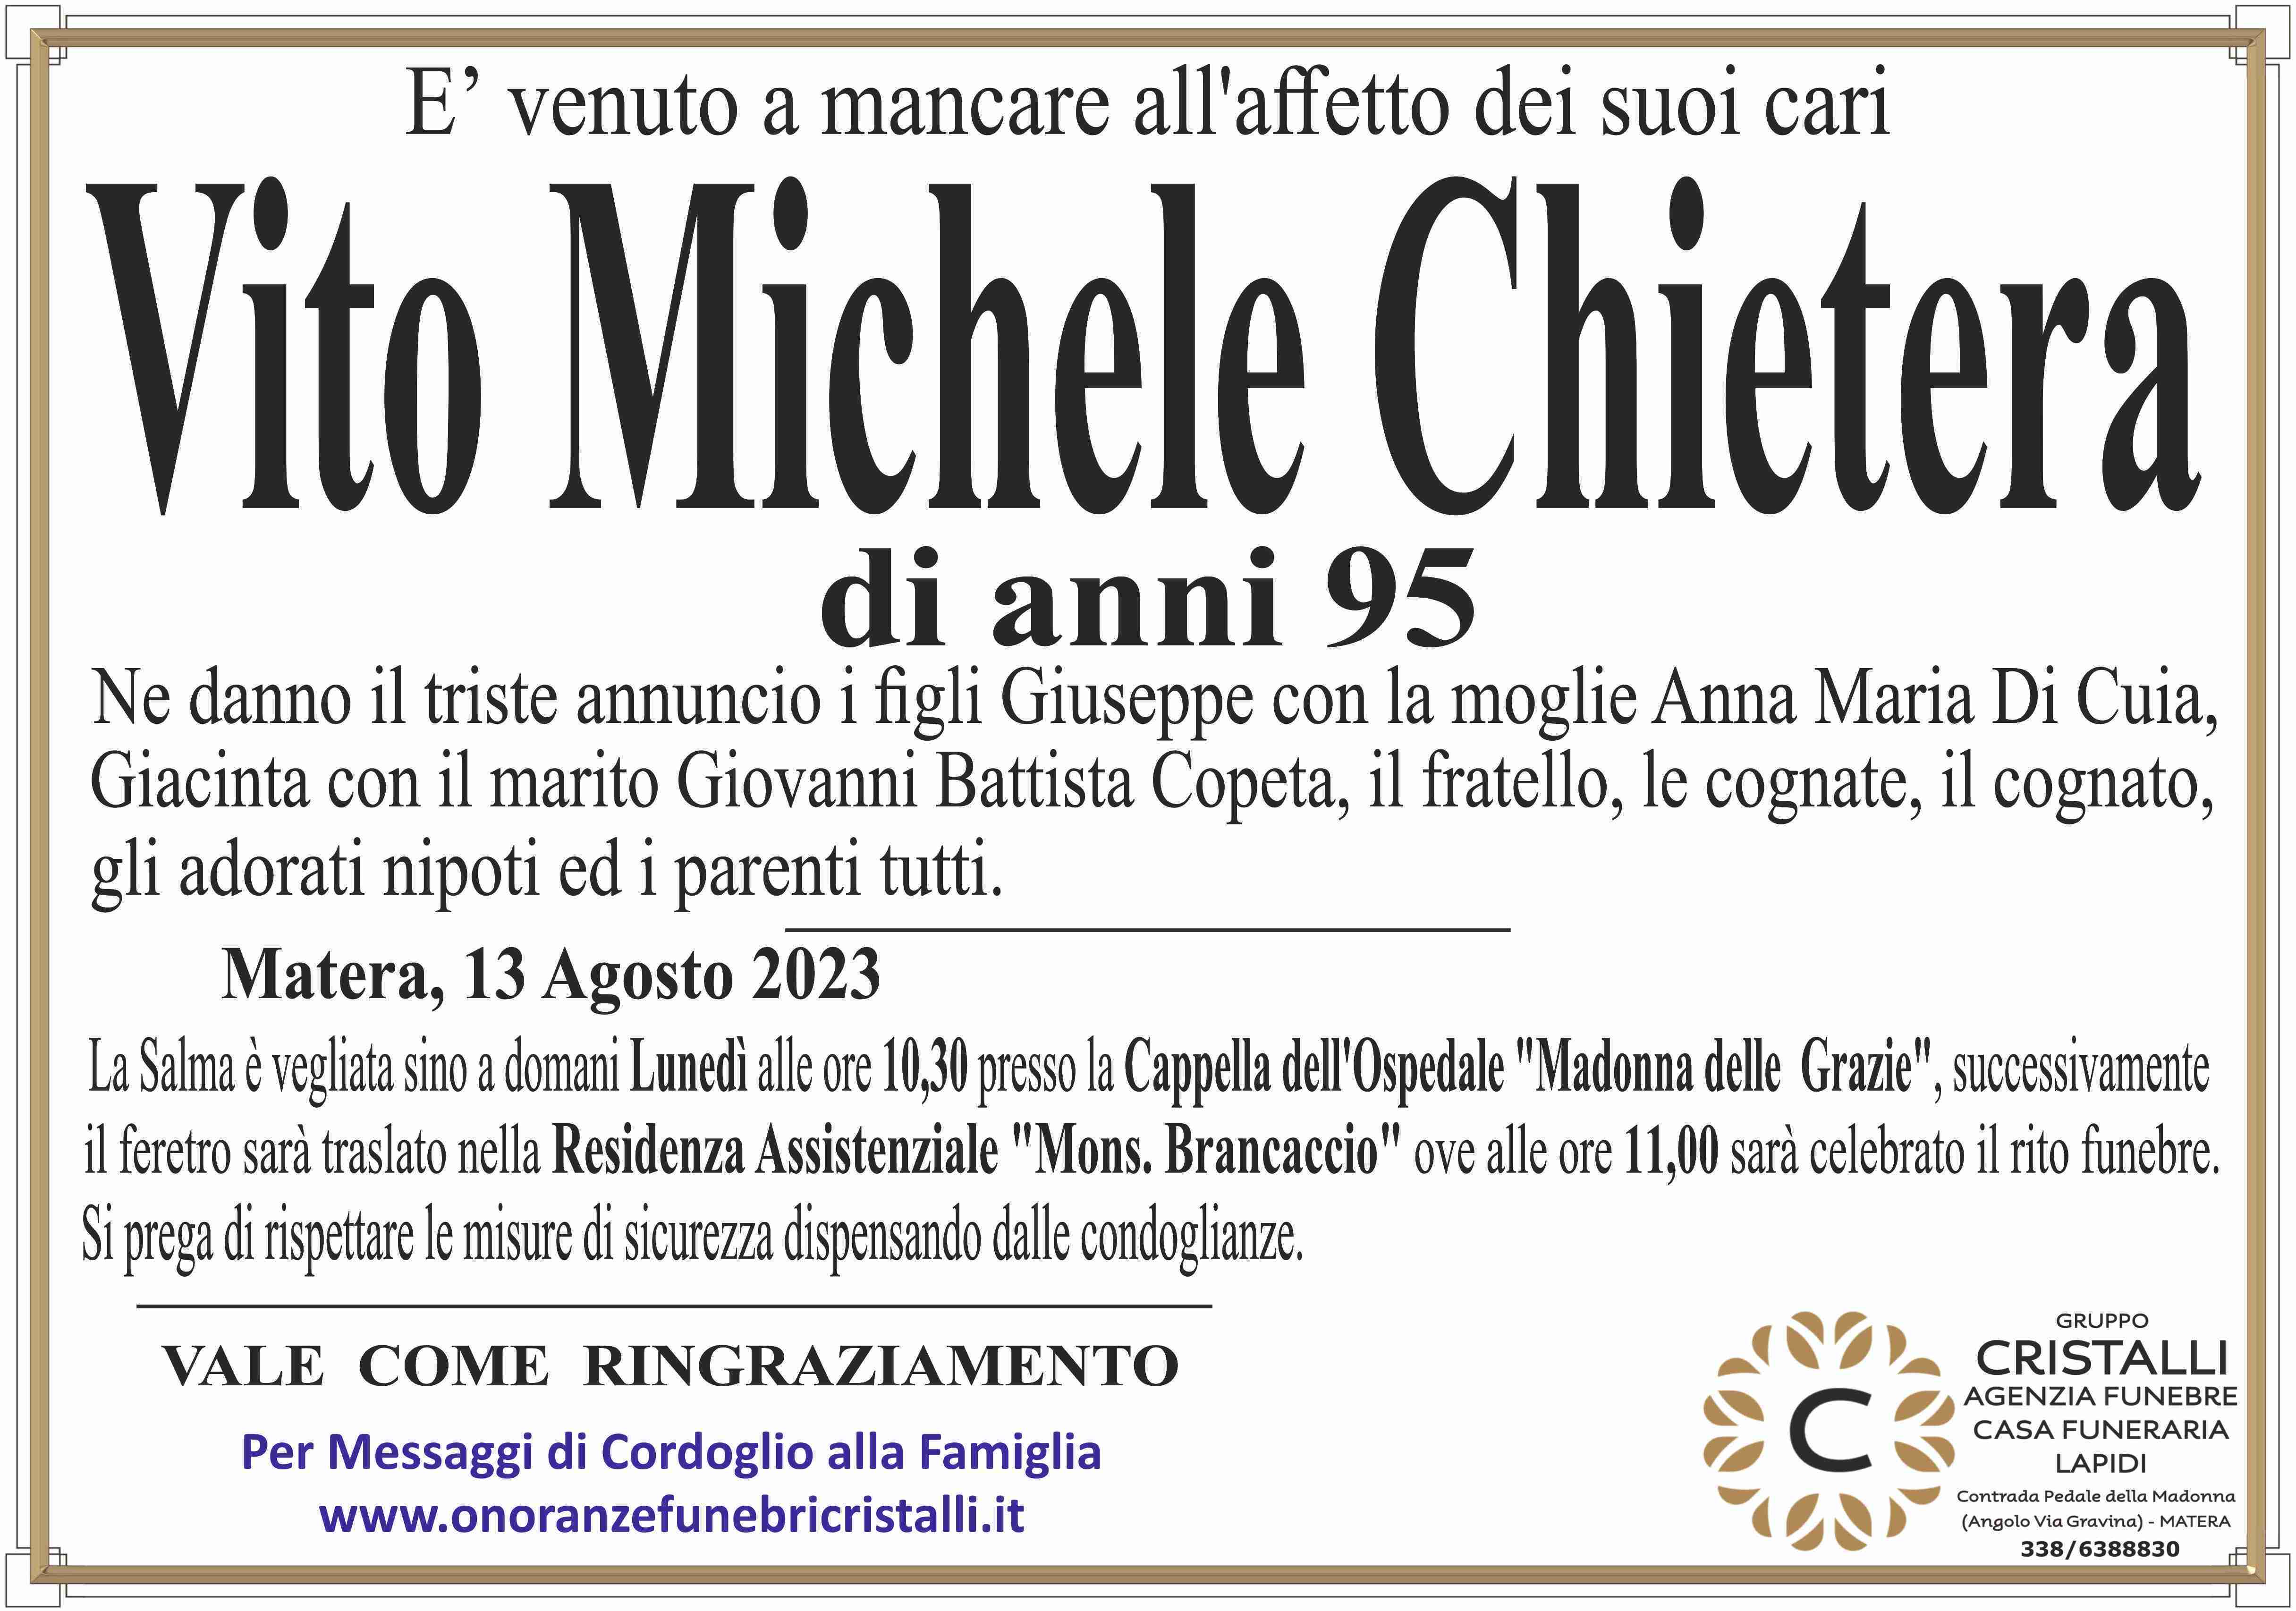 Vito Michele Chietera